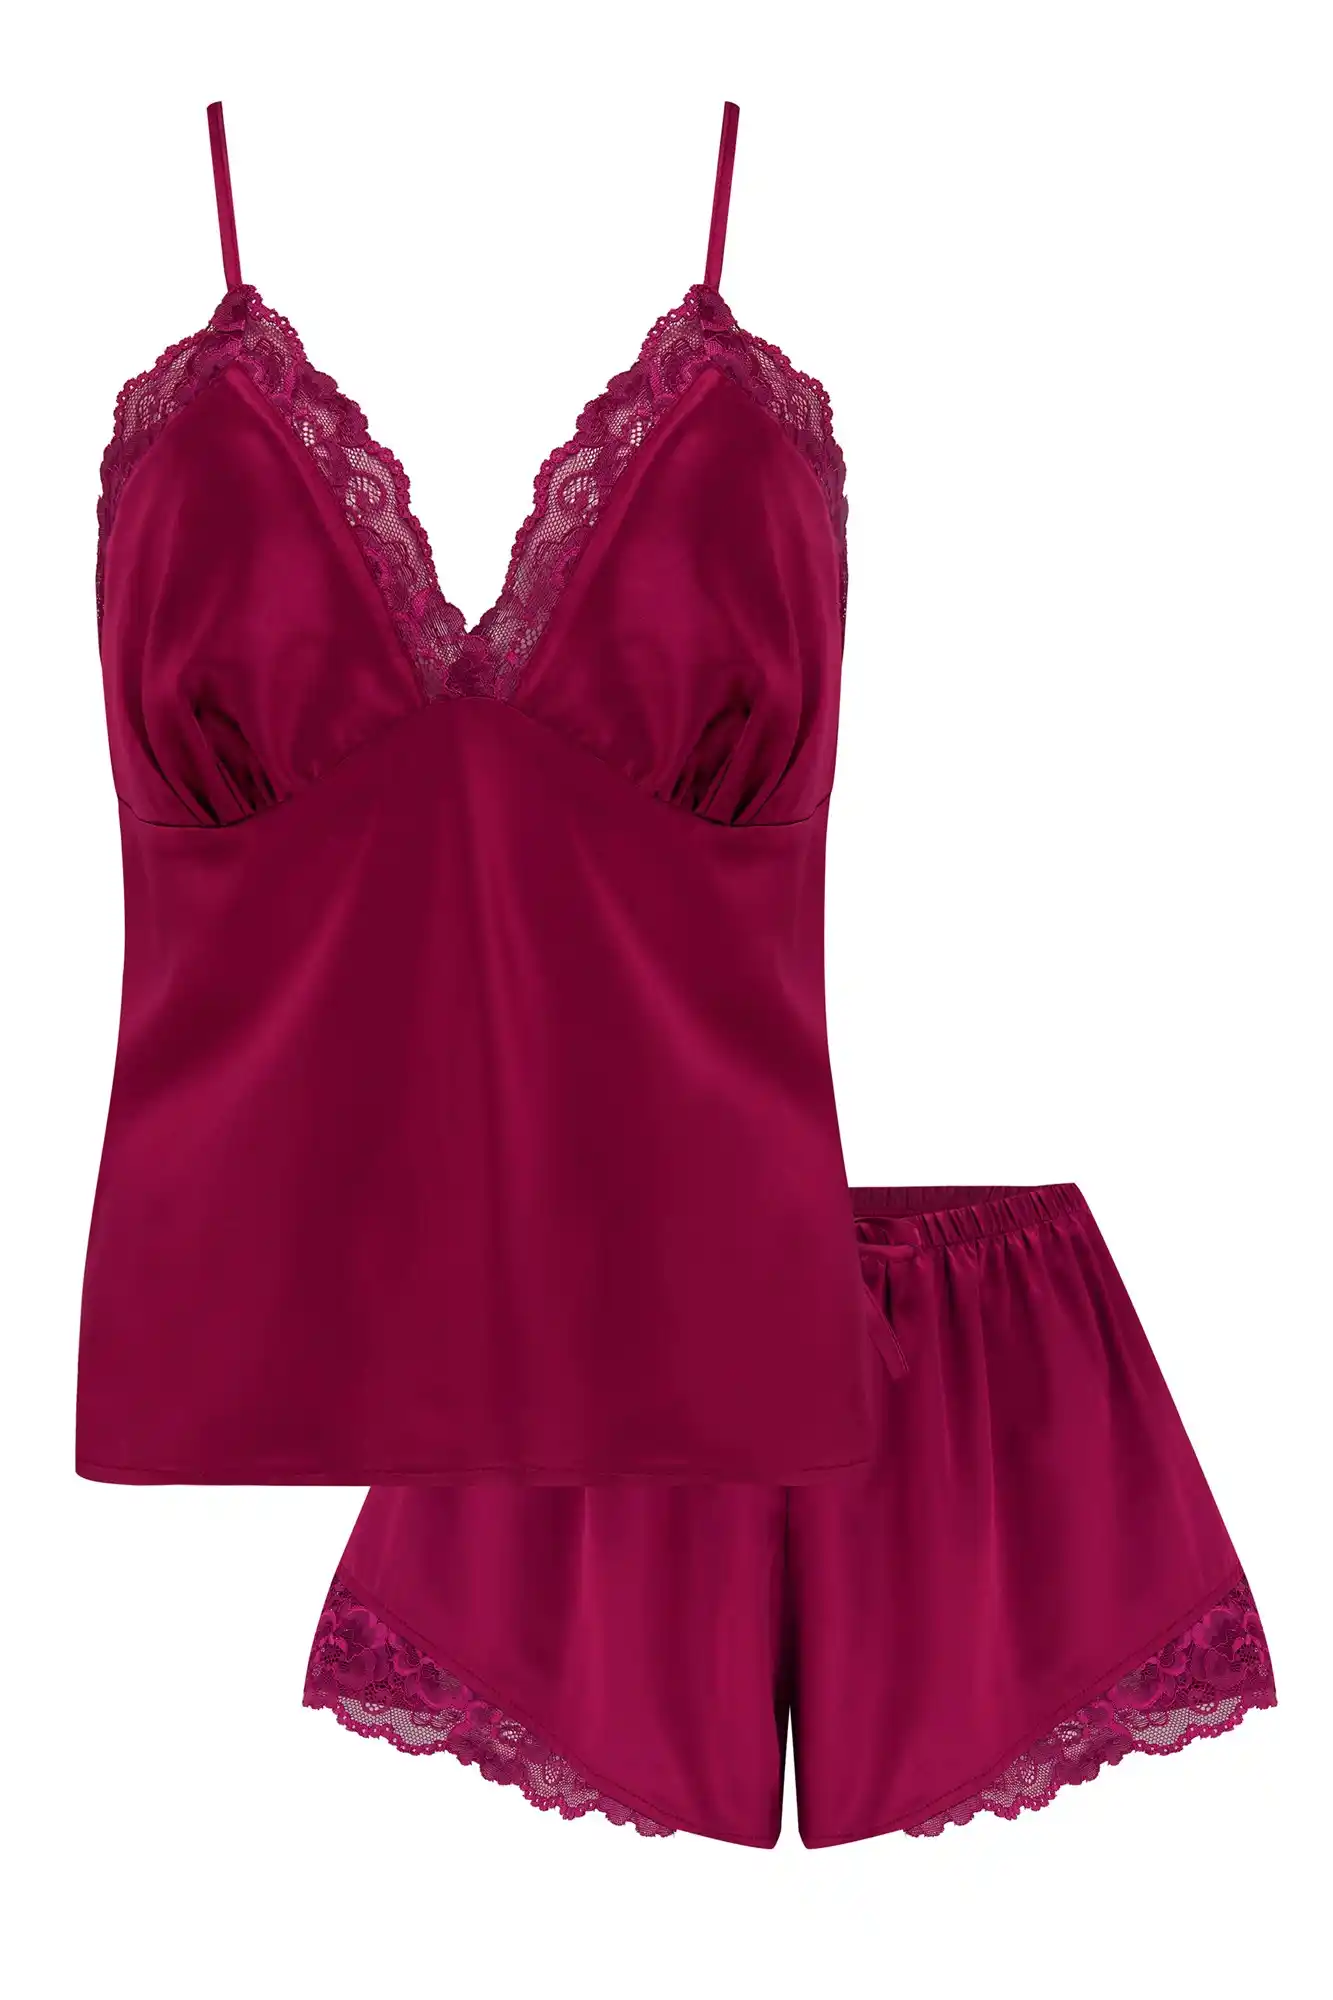 Women's Lingerie Pink Jersey Lace Trim Short PJ Set - Size 10